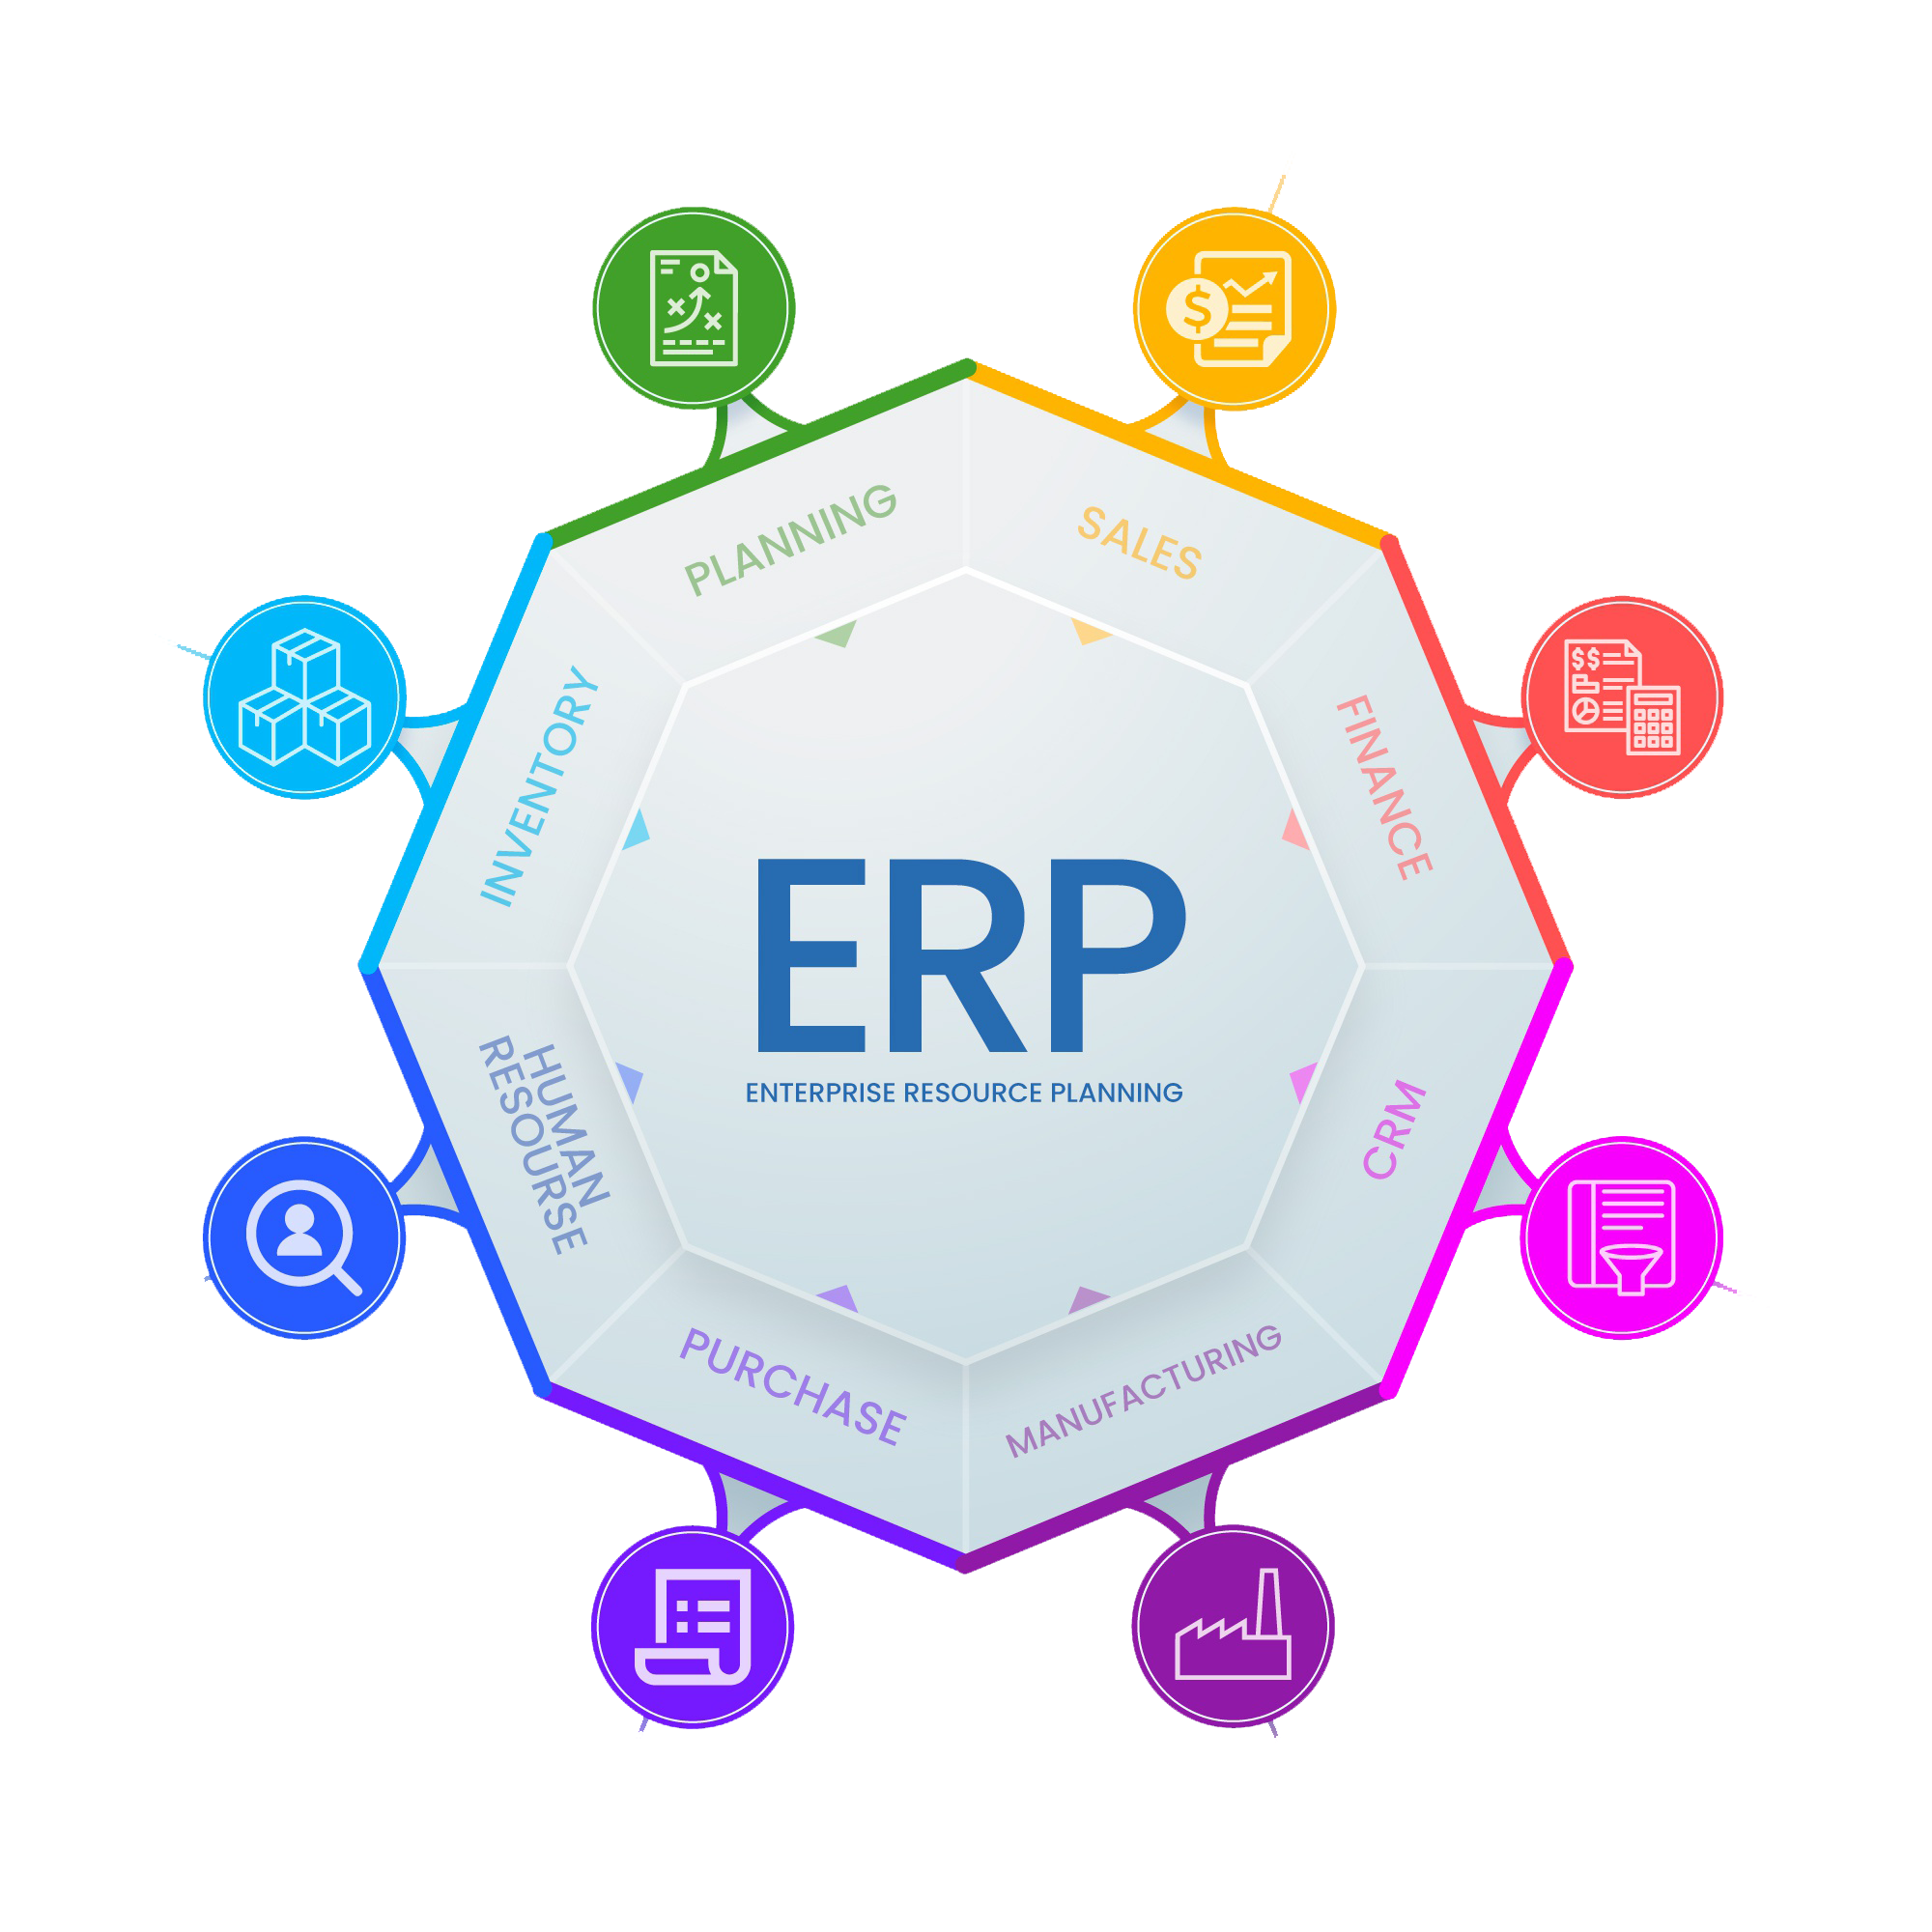 نرم افزار ERP از چه بخش هایی تشکیل شده است ؟